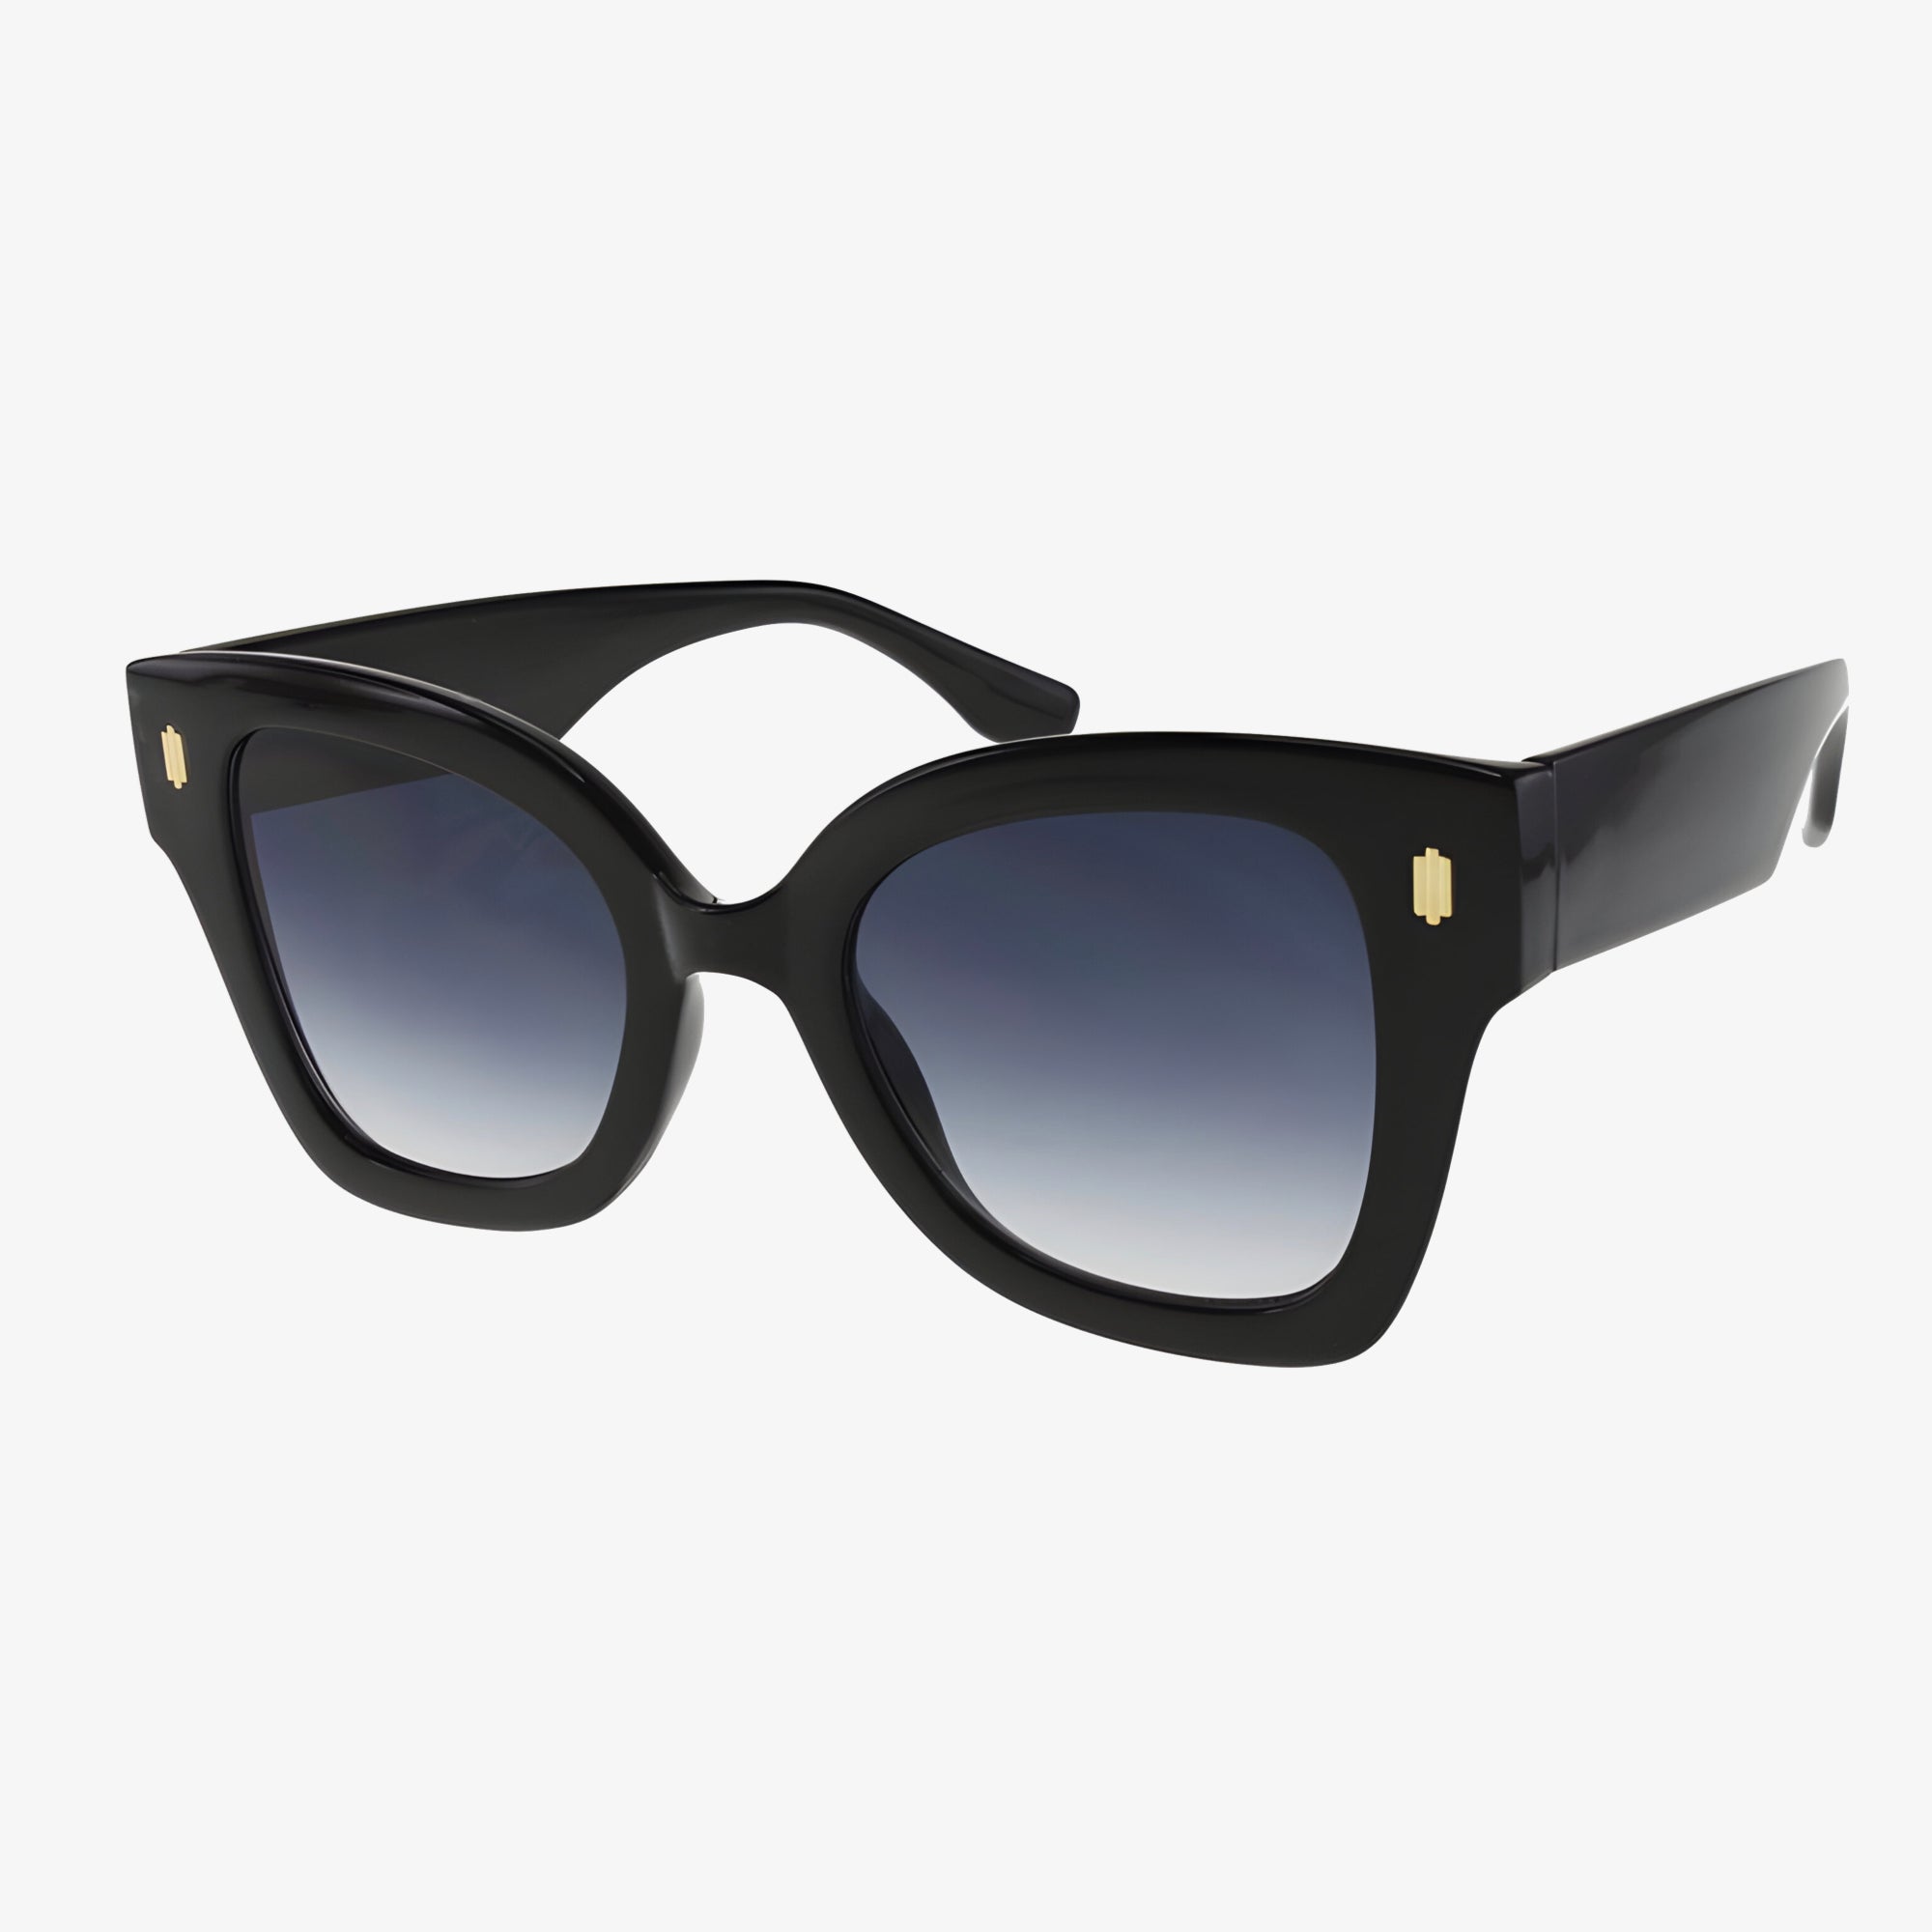 Caicos Sunglasses Black